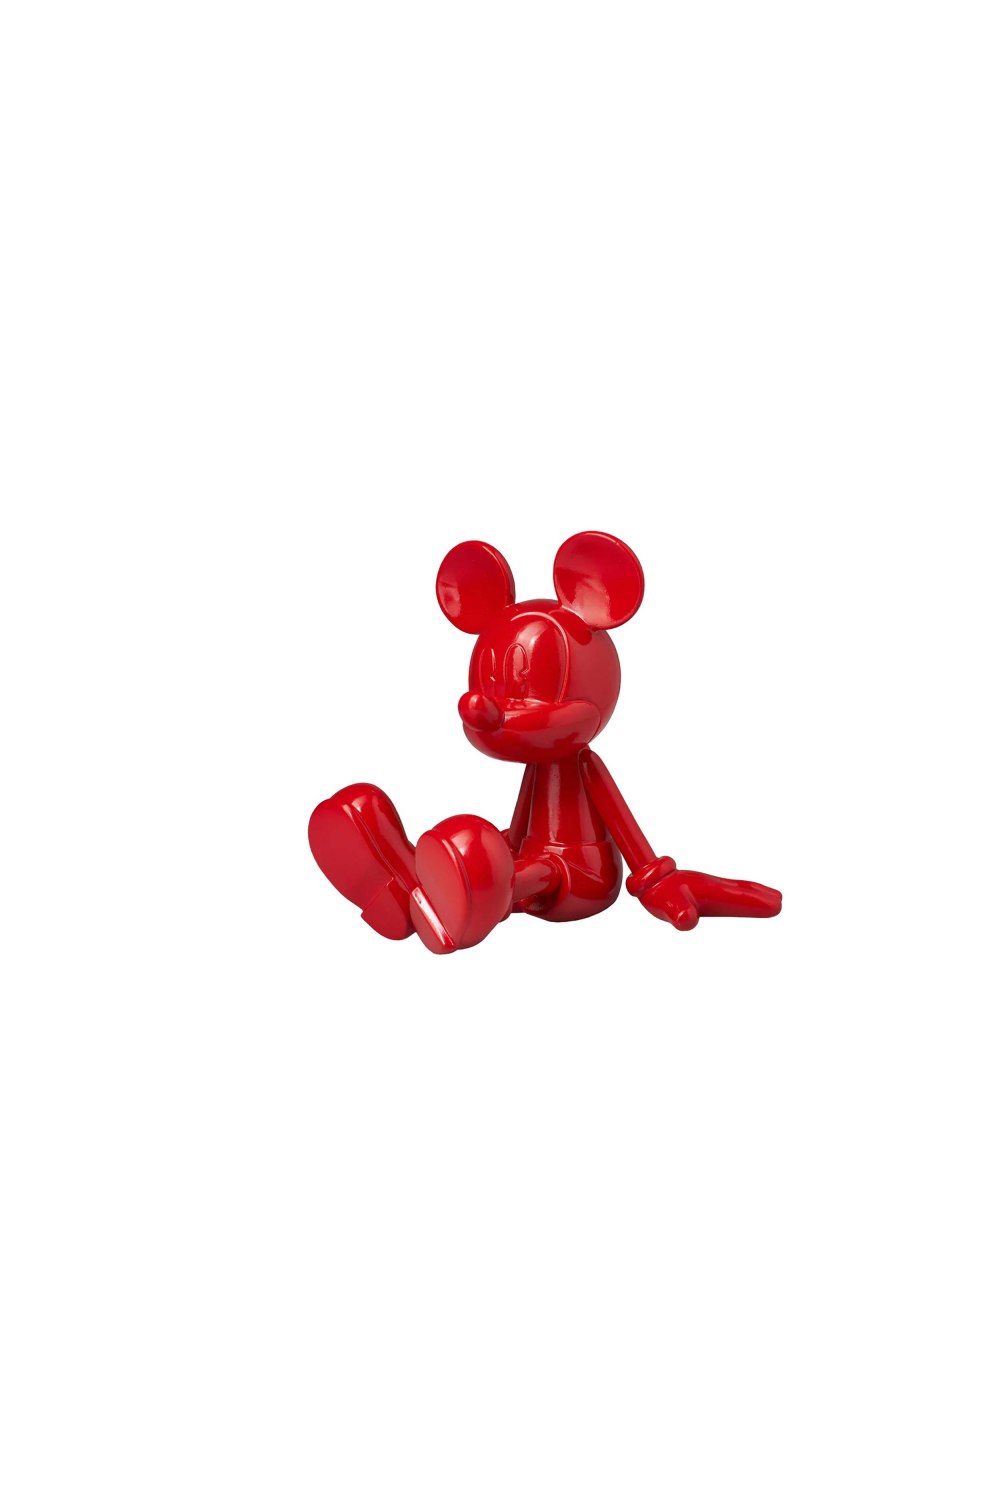 LEBLON DELIENNE - Sitting Mickey by Marcel Wanders